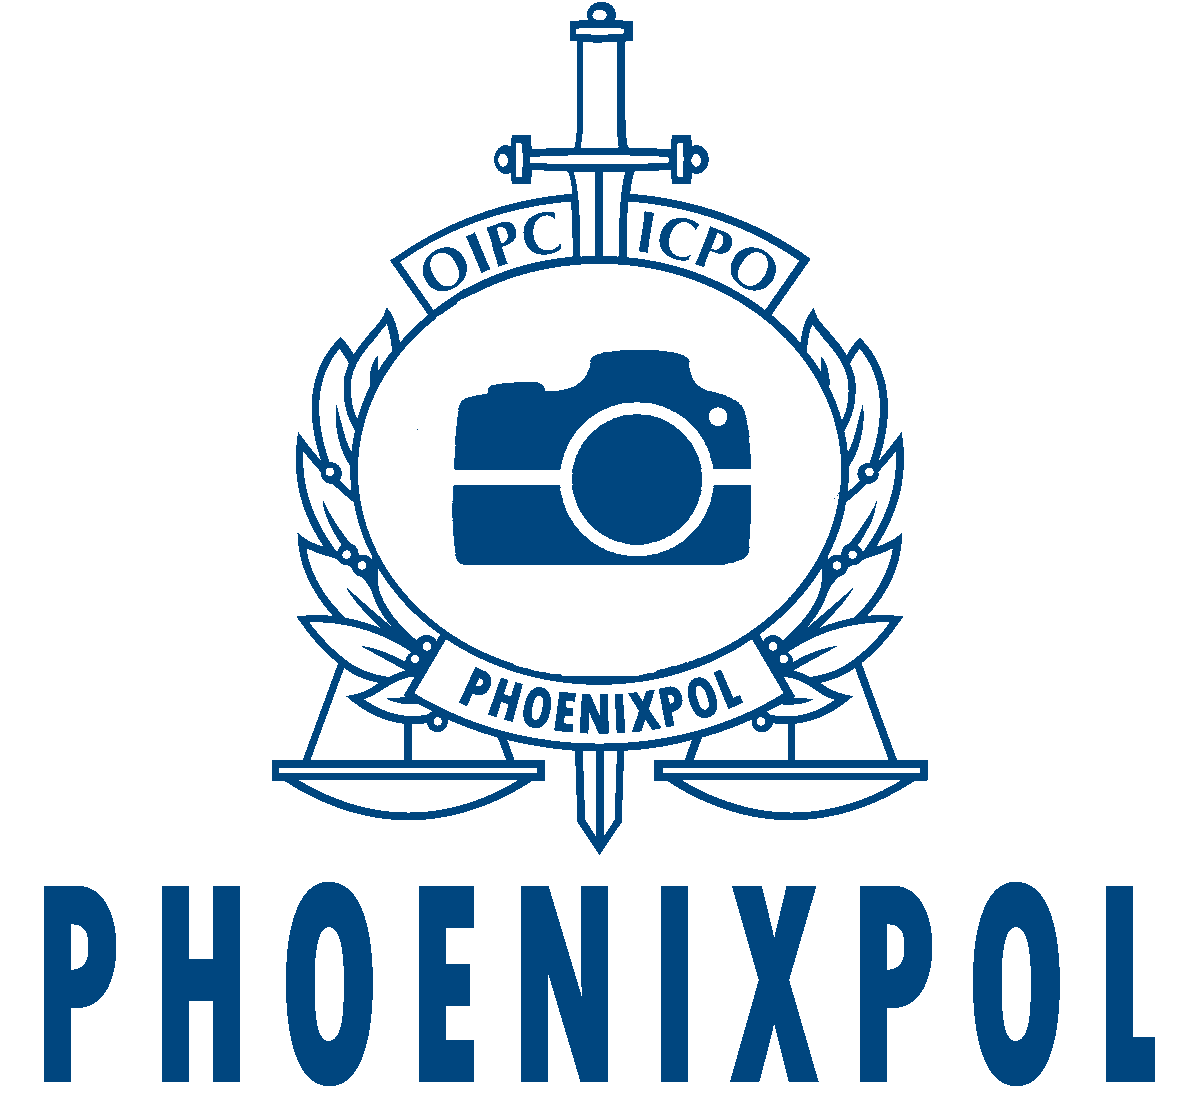 Phoenixpol